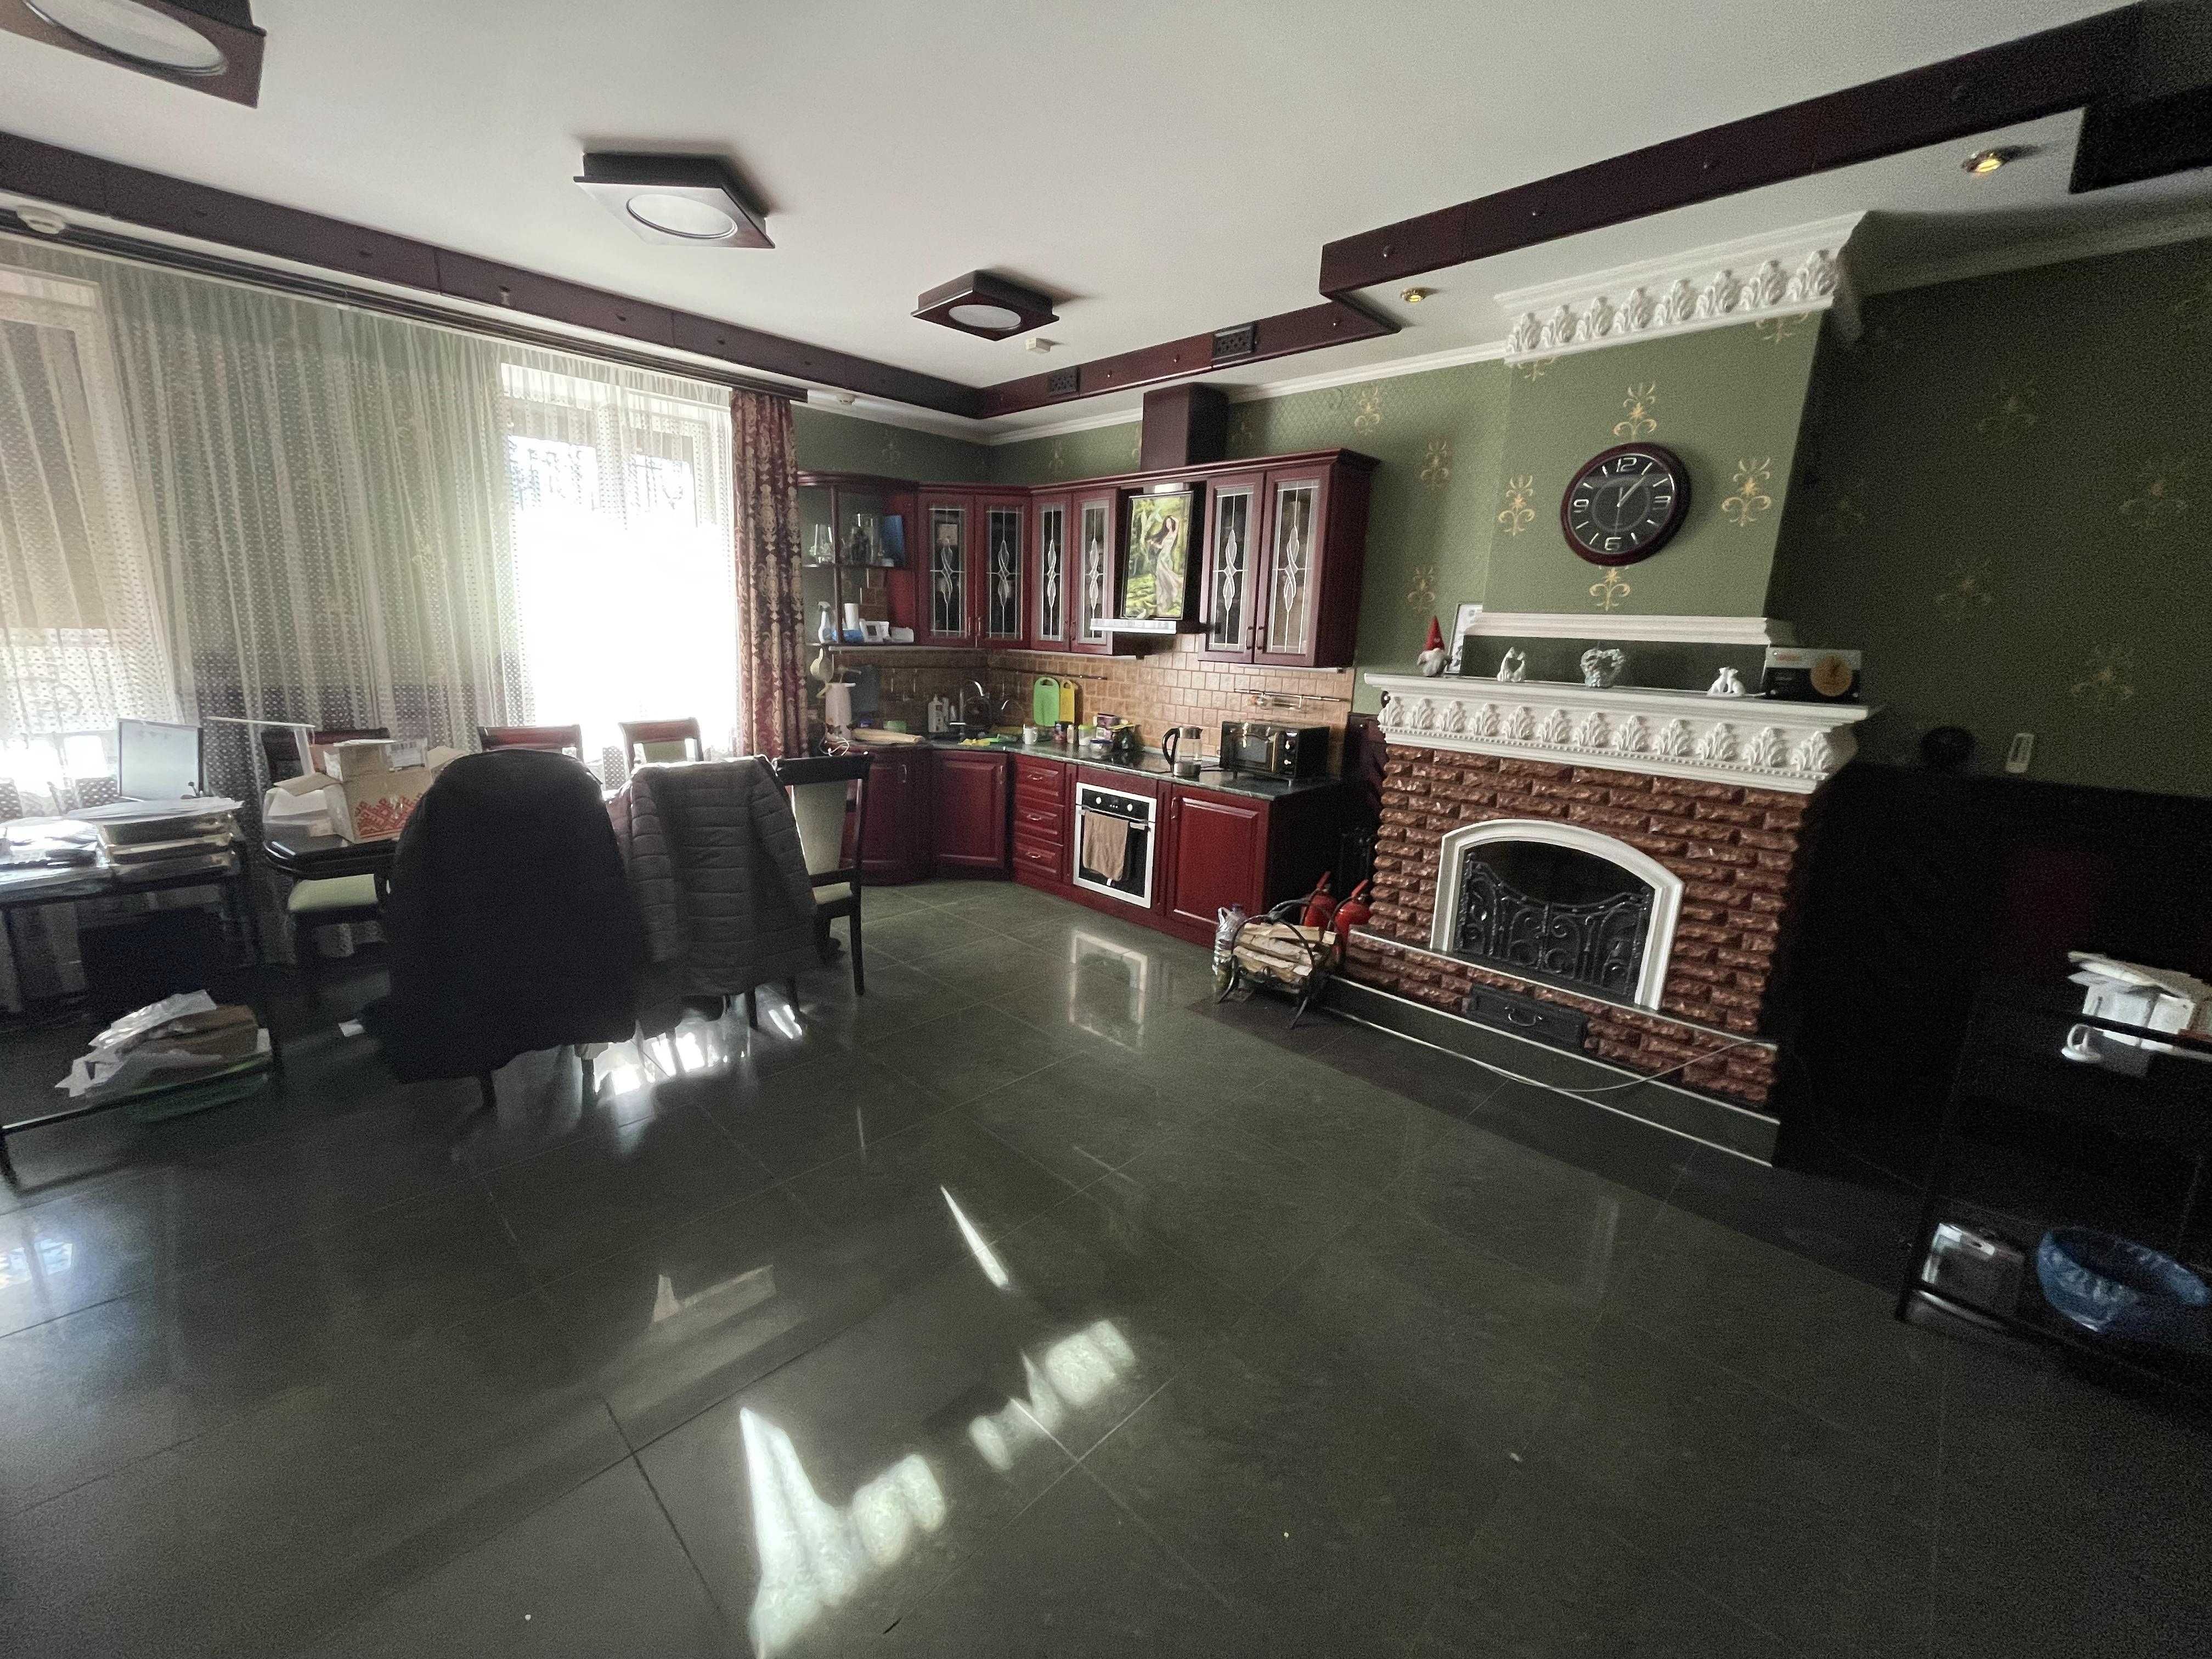 Продается офис 139 кв.м. евроремонт дворик гараж  цена 75 тыс.у.е.